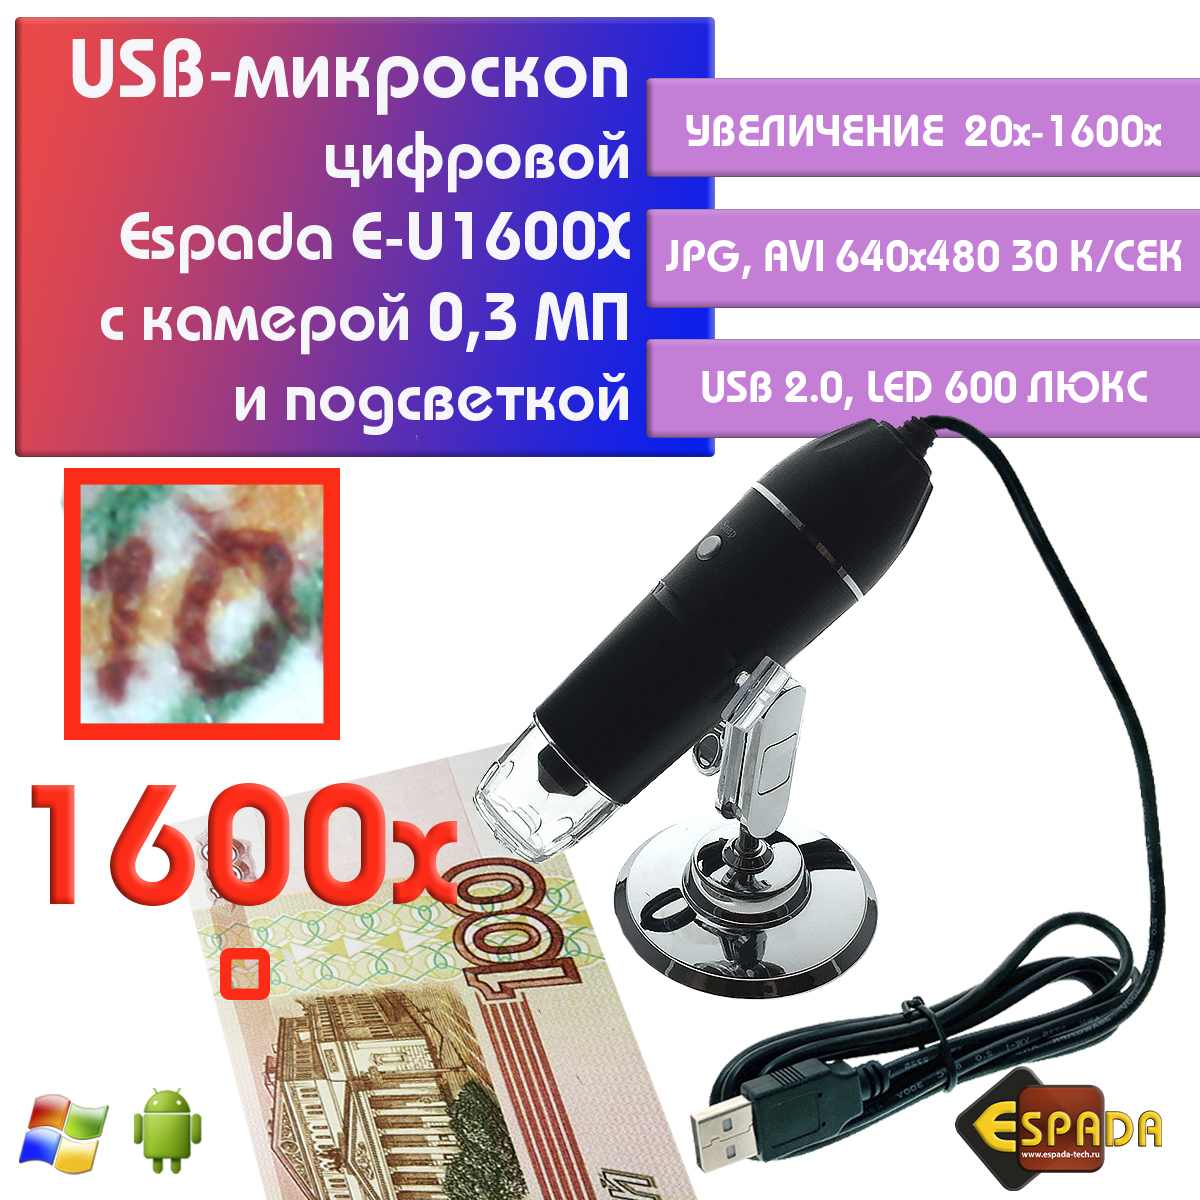 Портативный цифровой USB-микроскоп Espada E-U1600X c камерой 0,3 МП и увеличением 1600x